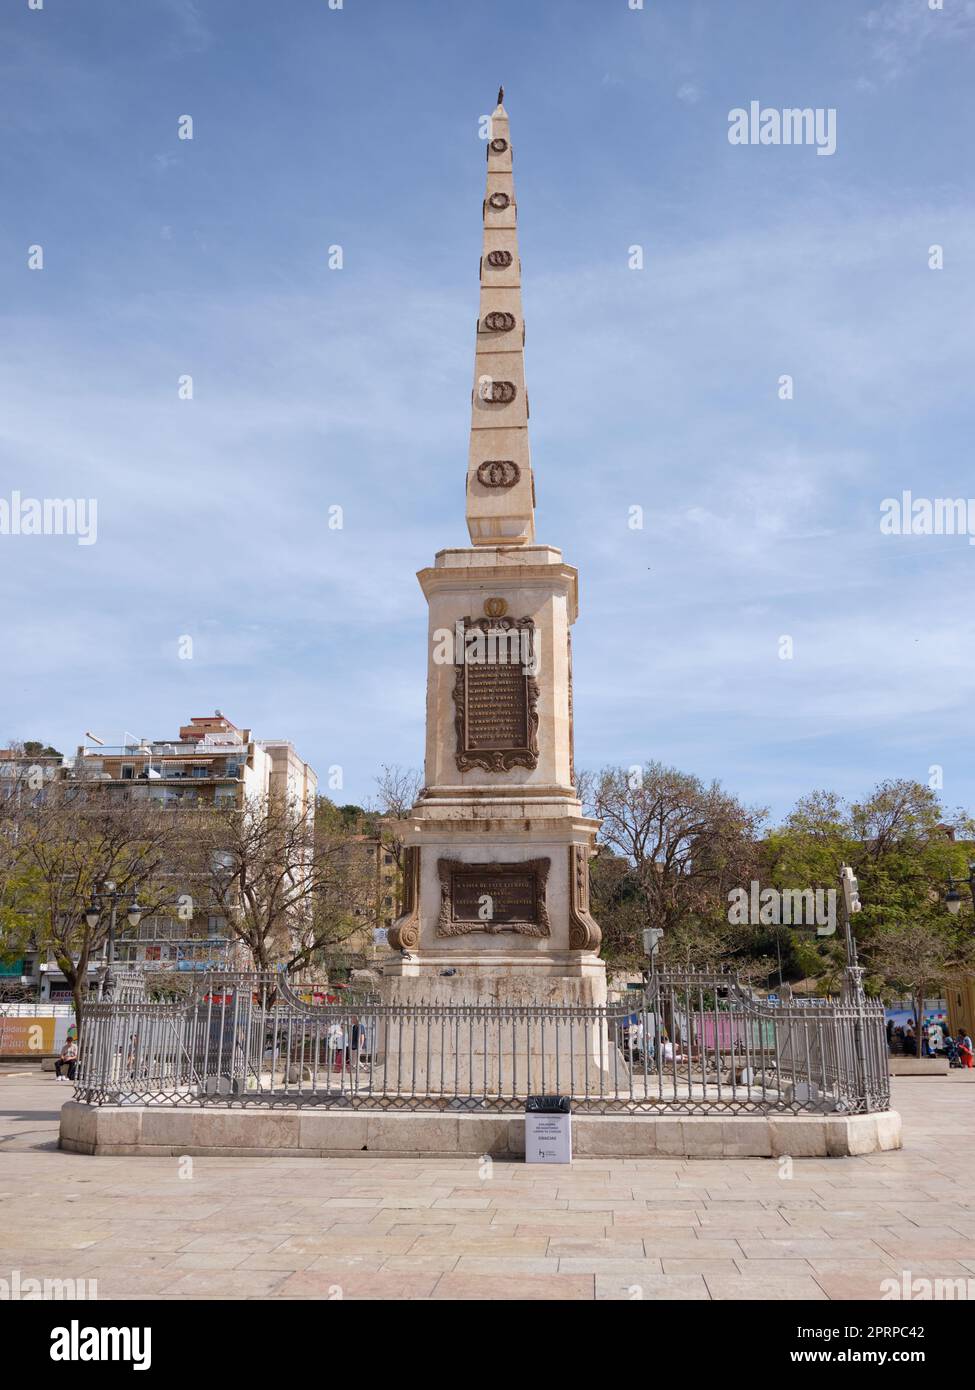 Obelisk in memory of general Torrijos, Plaza de La Merced, Malaga city center, Malaga, Spain. Stock Photo